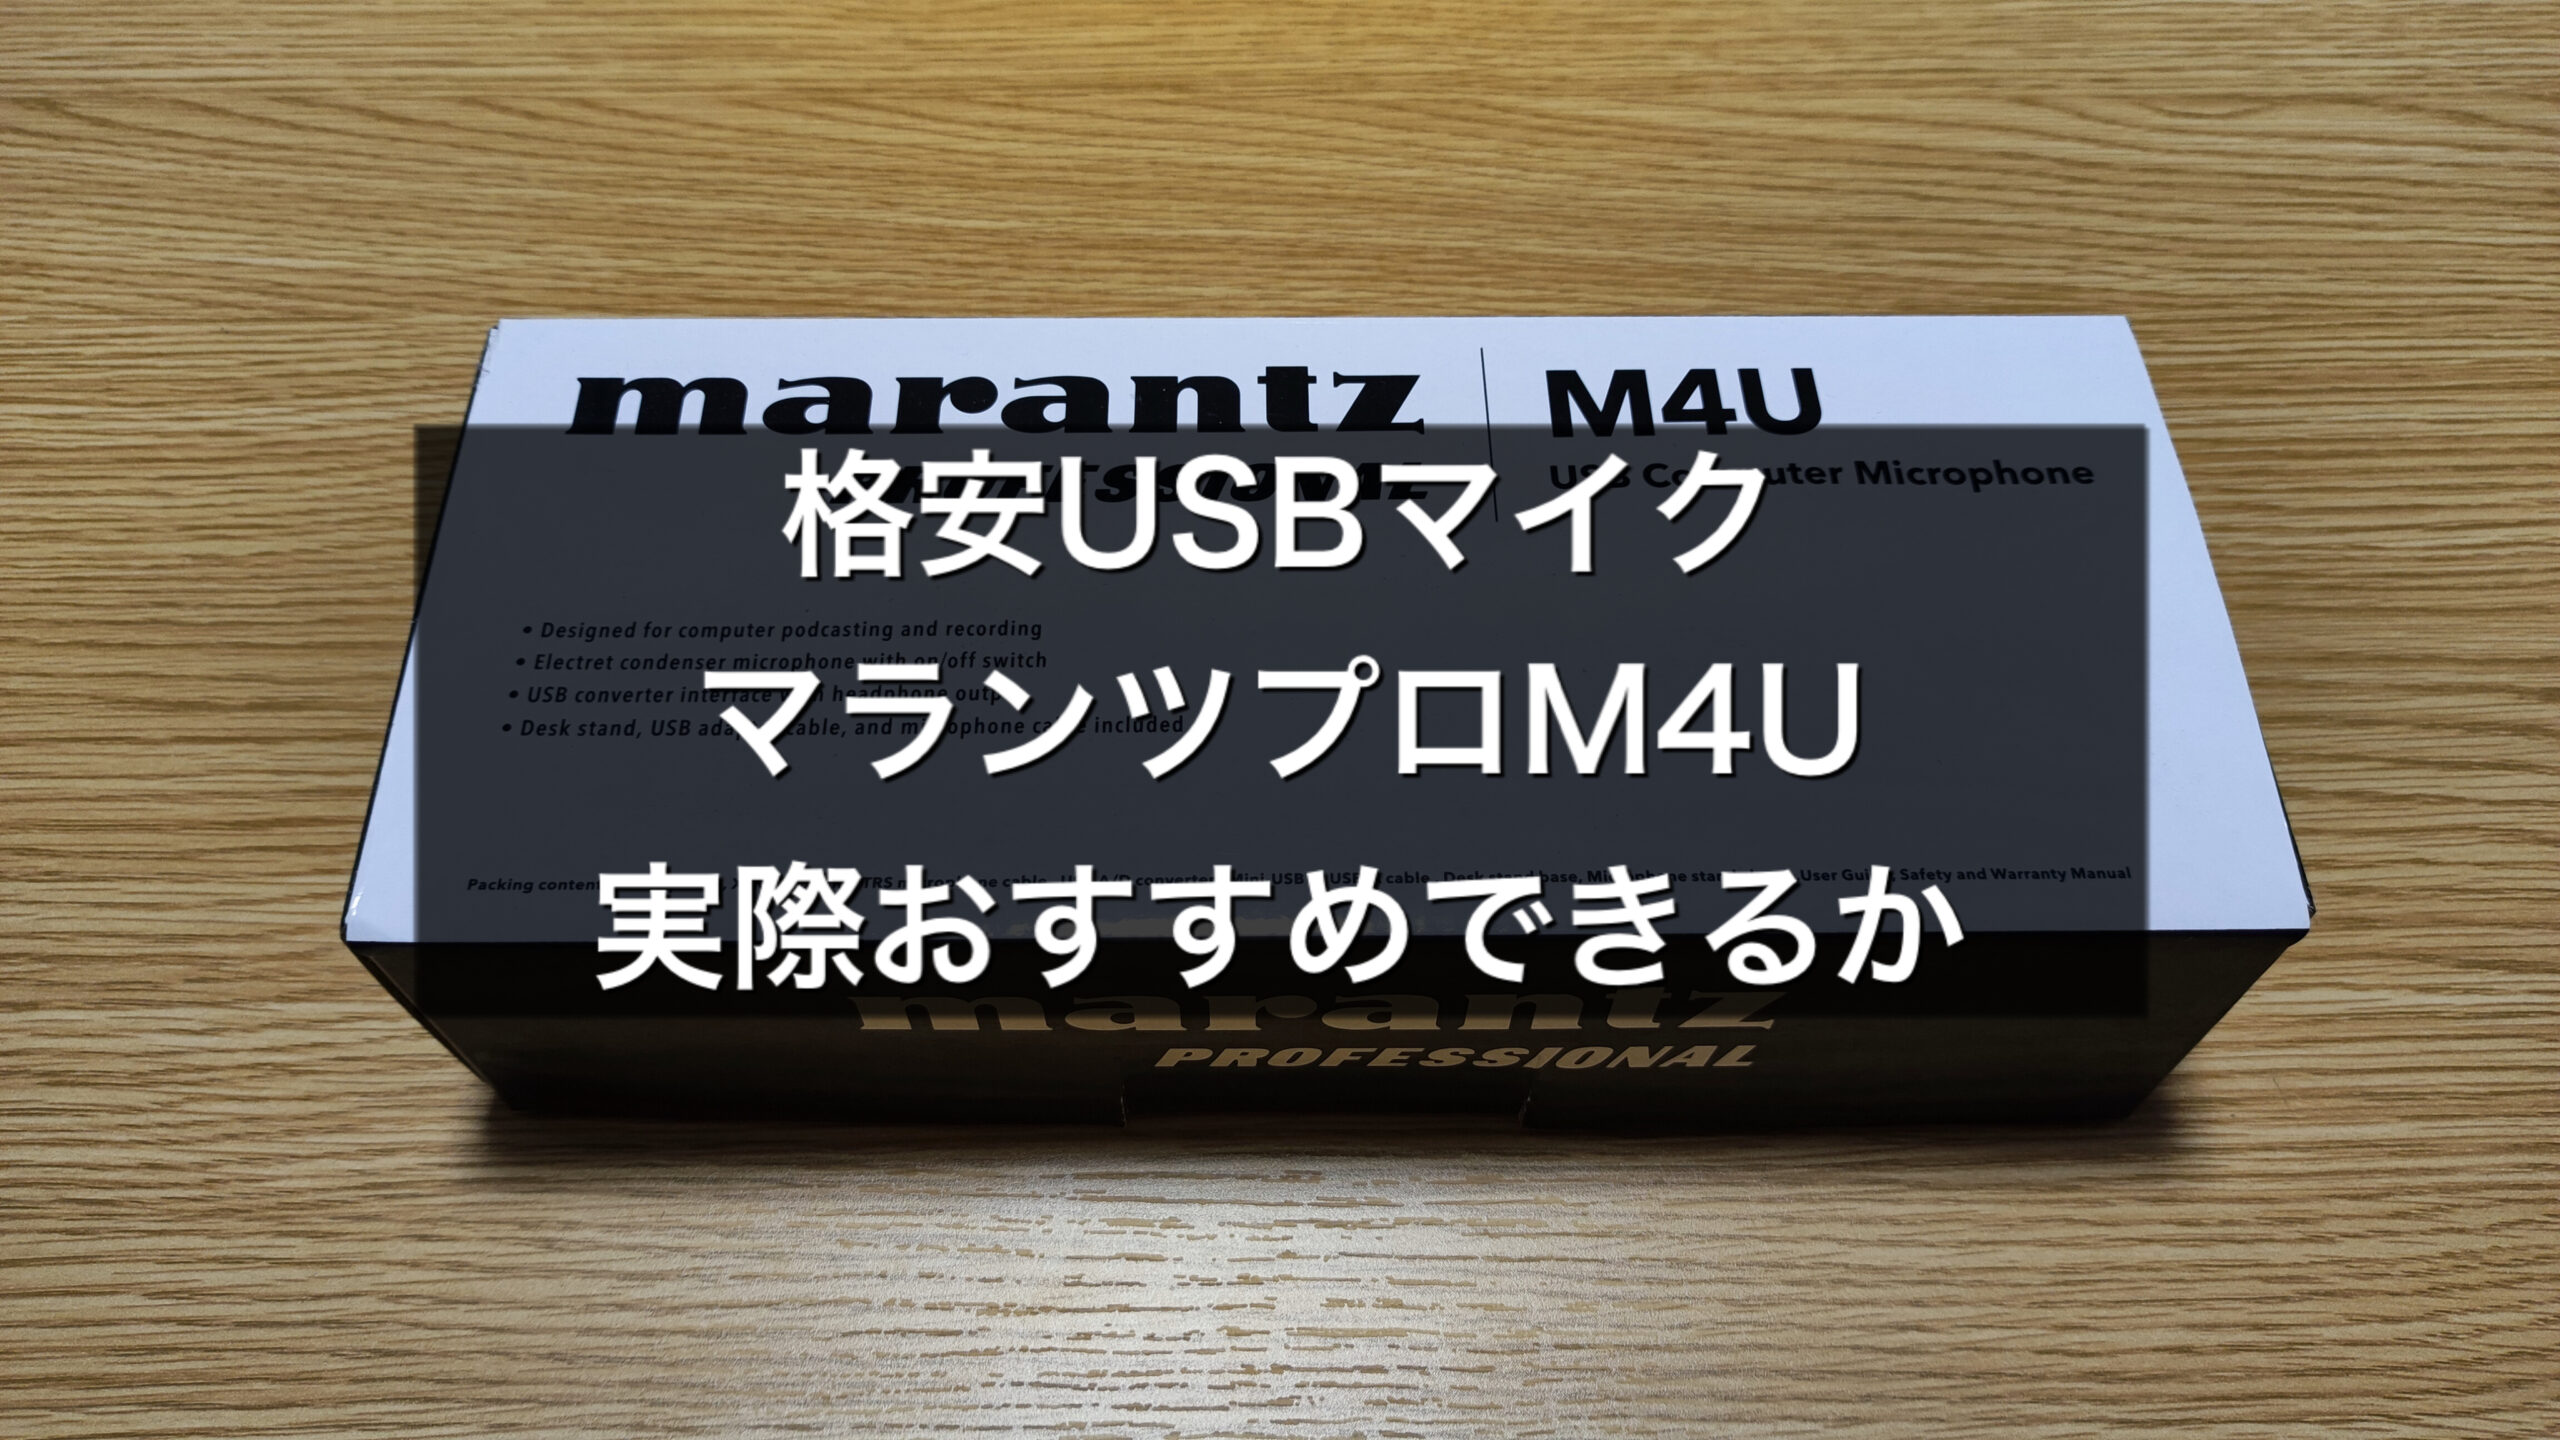 捧呈 セット買い 888M  + キクタニ ポップブロッカー  PO-7 PLUTINUM デスクアーム式  マランツプロ USBコンデンサーマイク MPM2000U  フレキシブル マイクスタンド MPC1  BLK セット